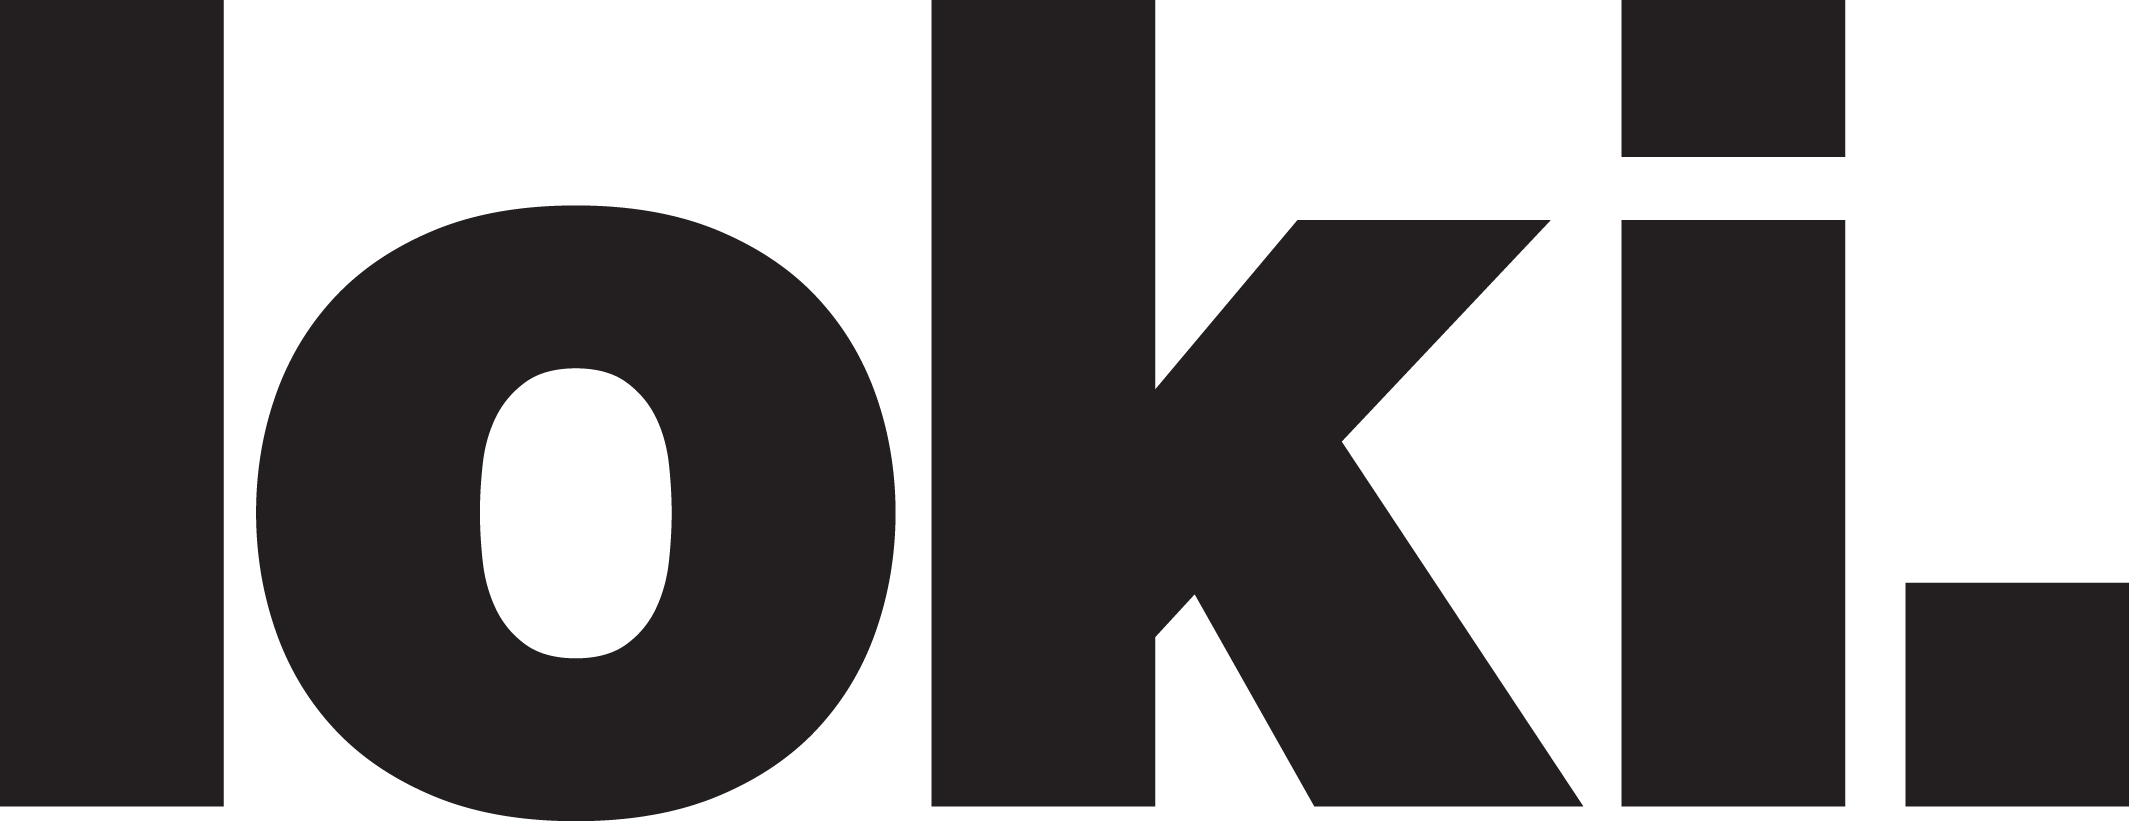 Loki Logos